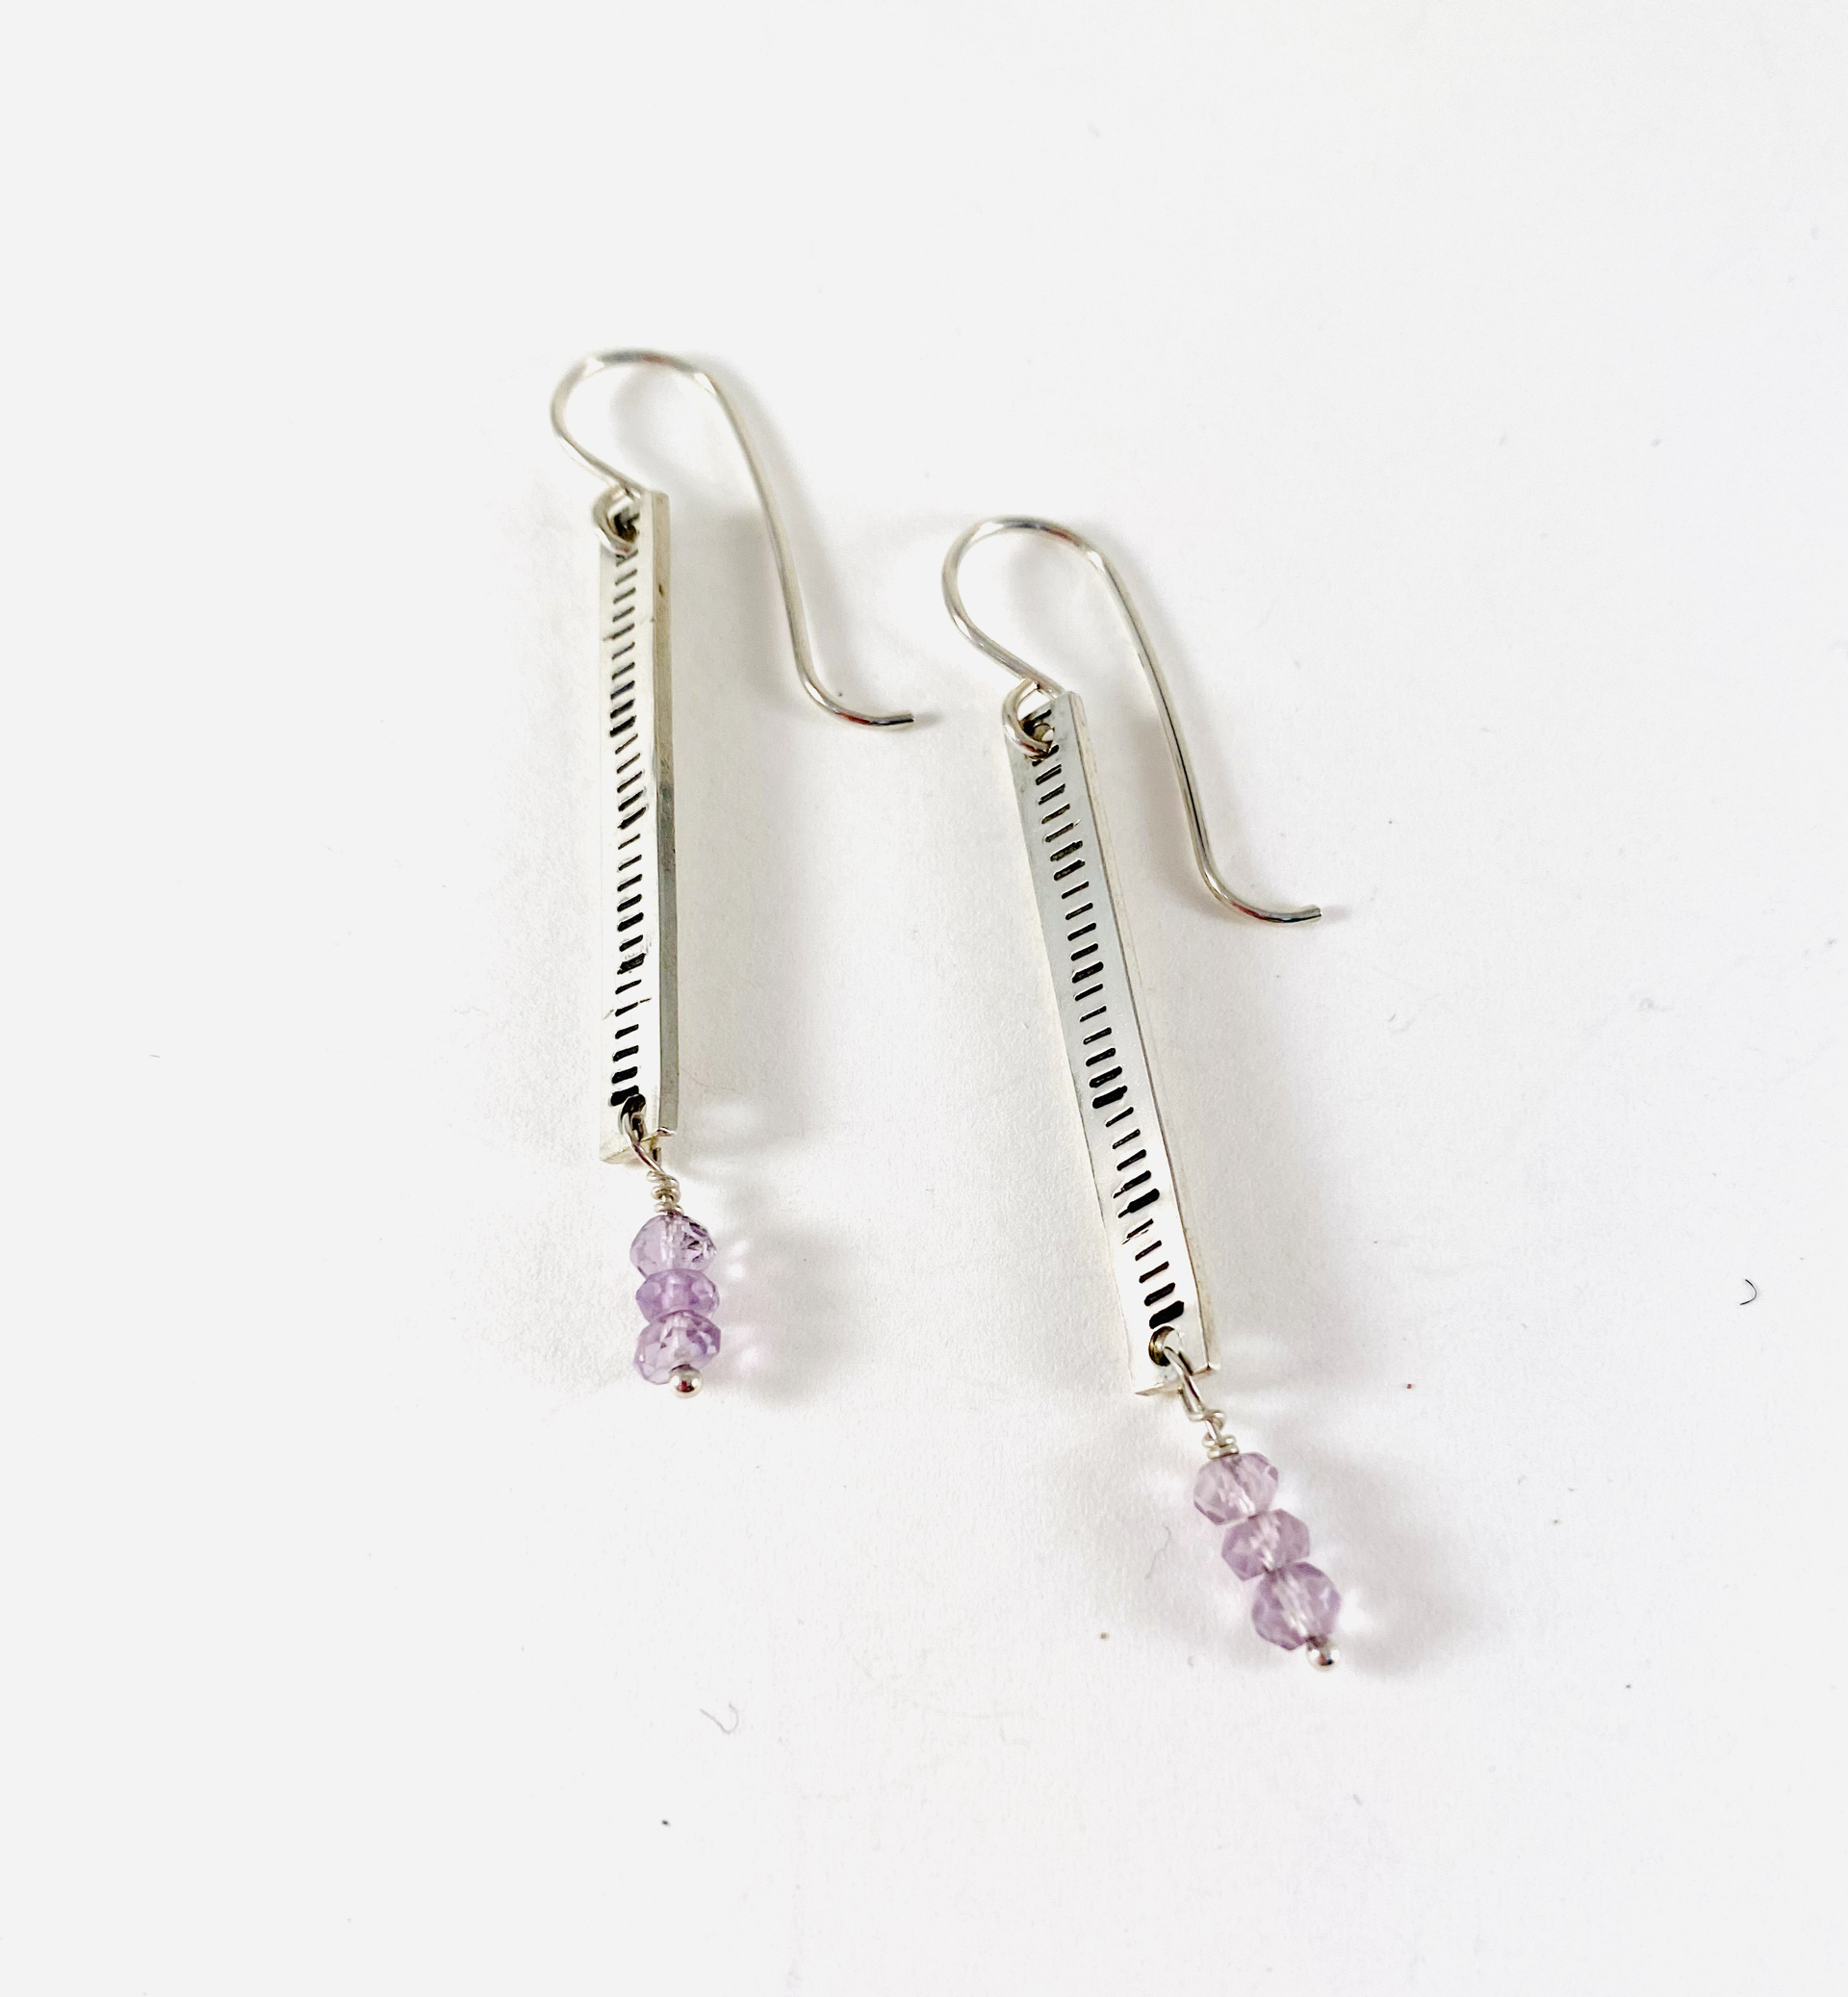 Silver Amethyst Earrings by Shelby Lee - jewelry